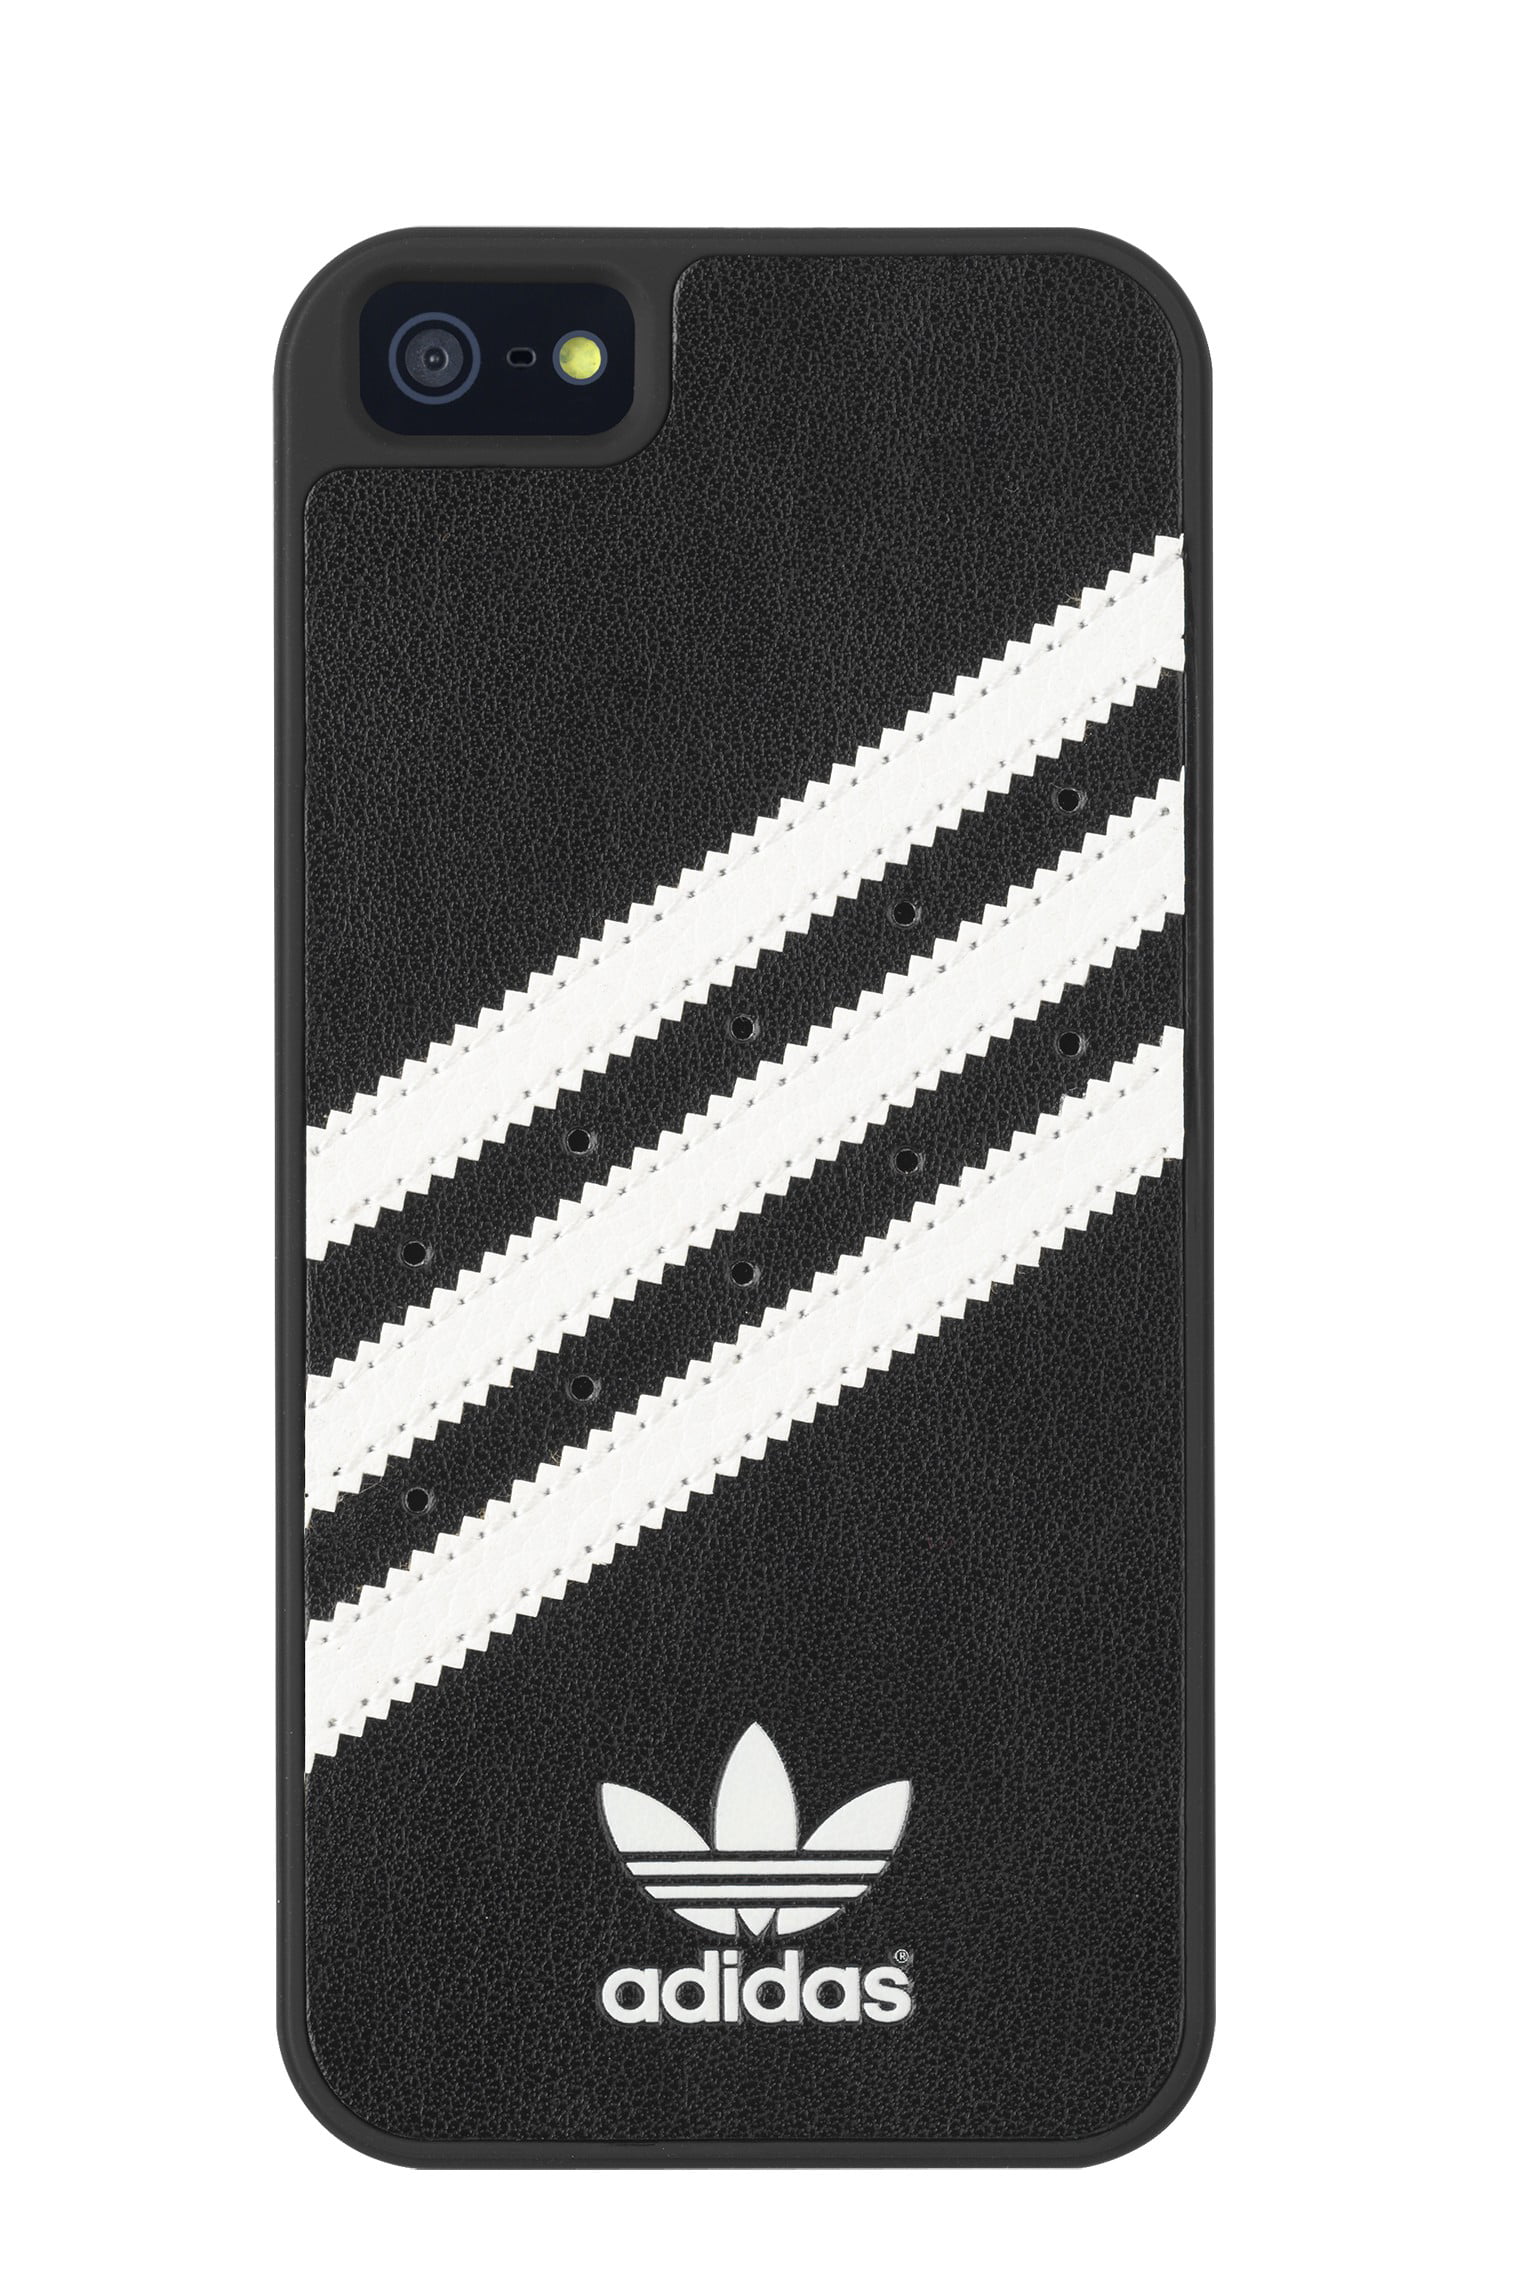 adidas iphone 5 case